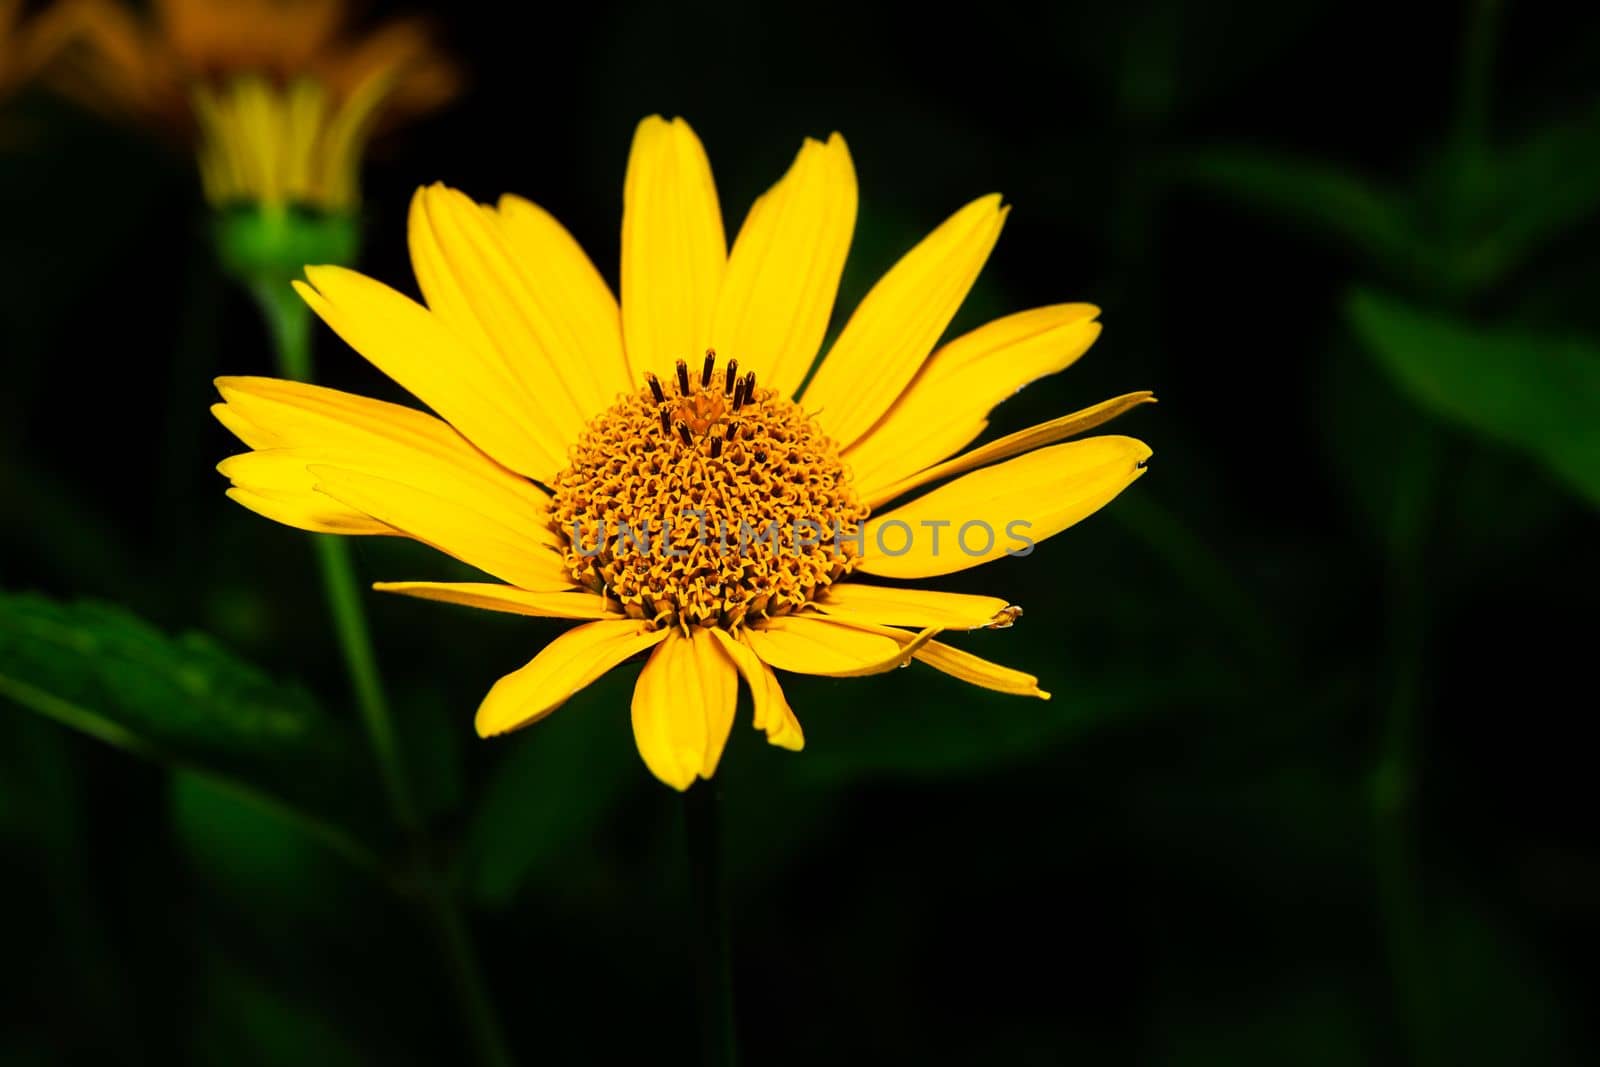 ten-petaled sunflower by mypstudio